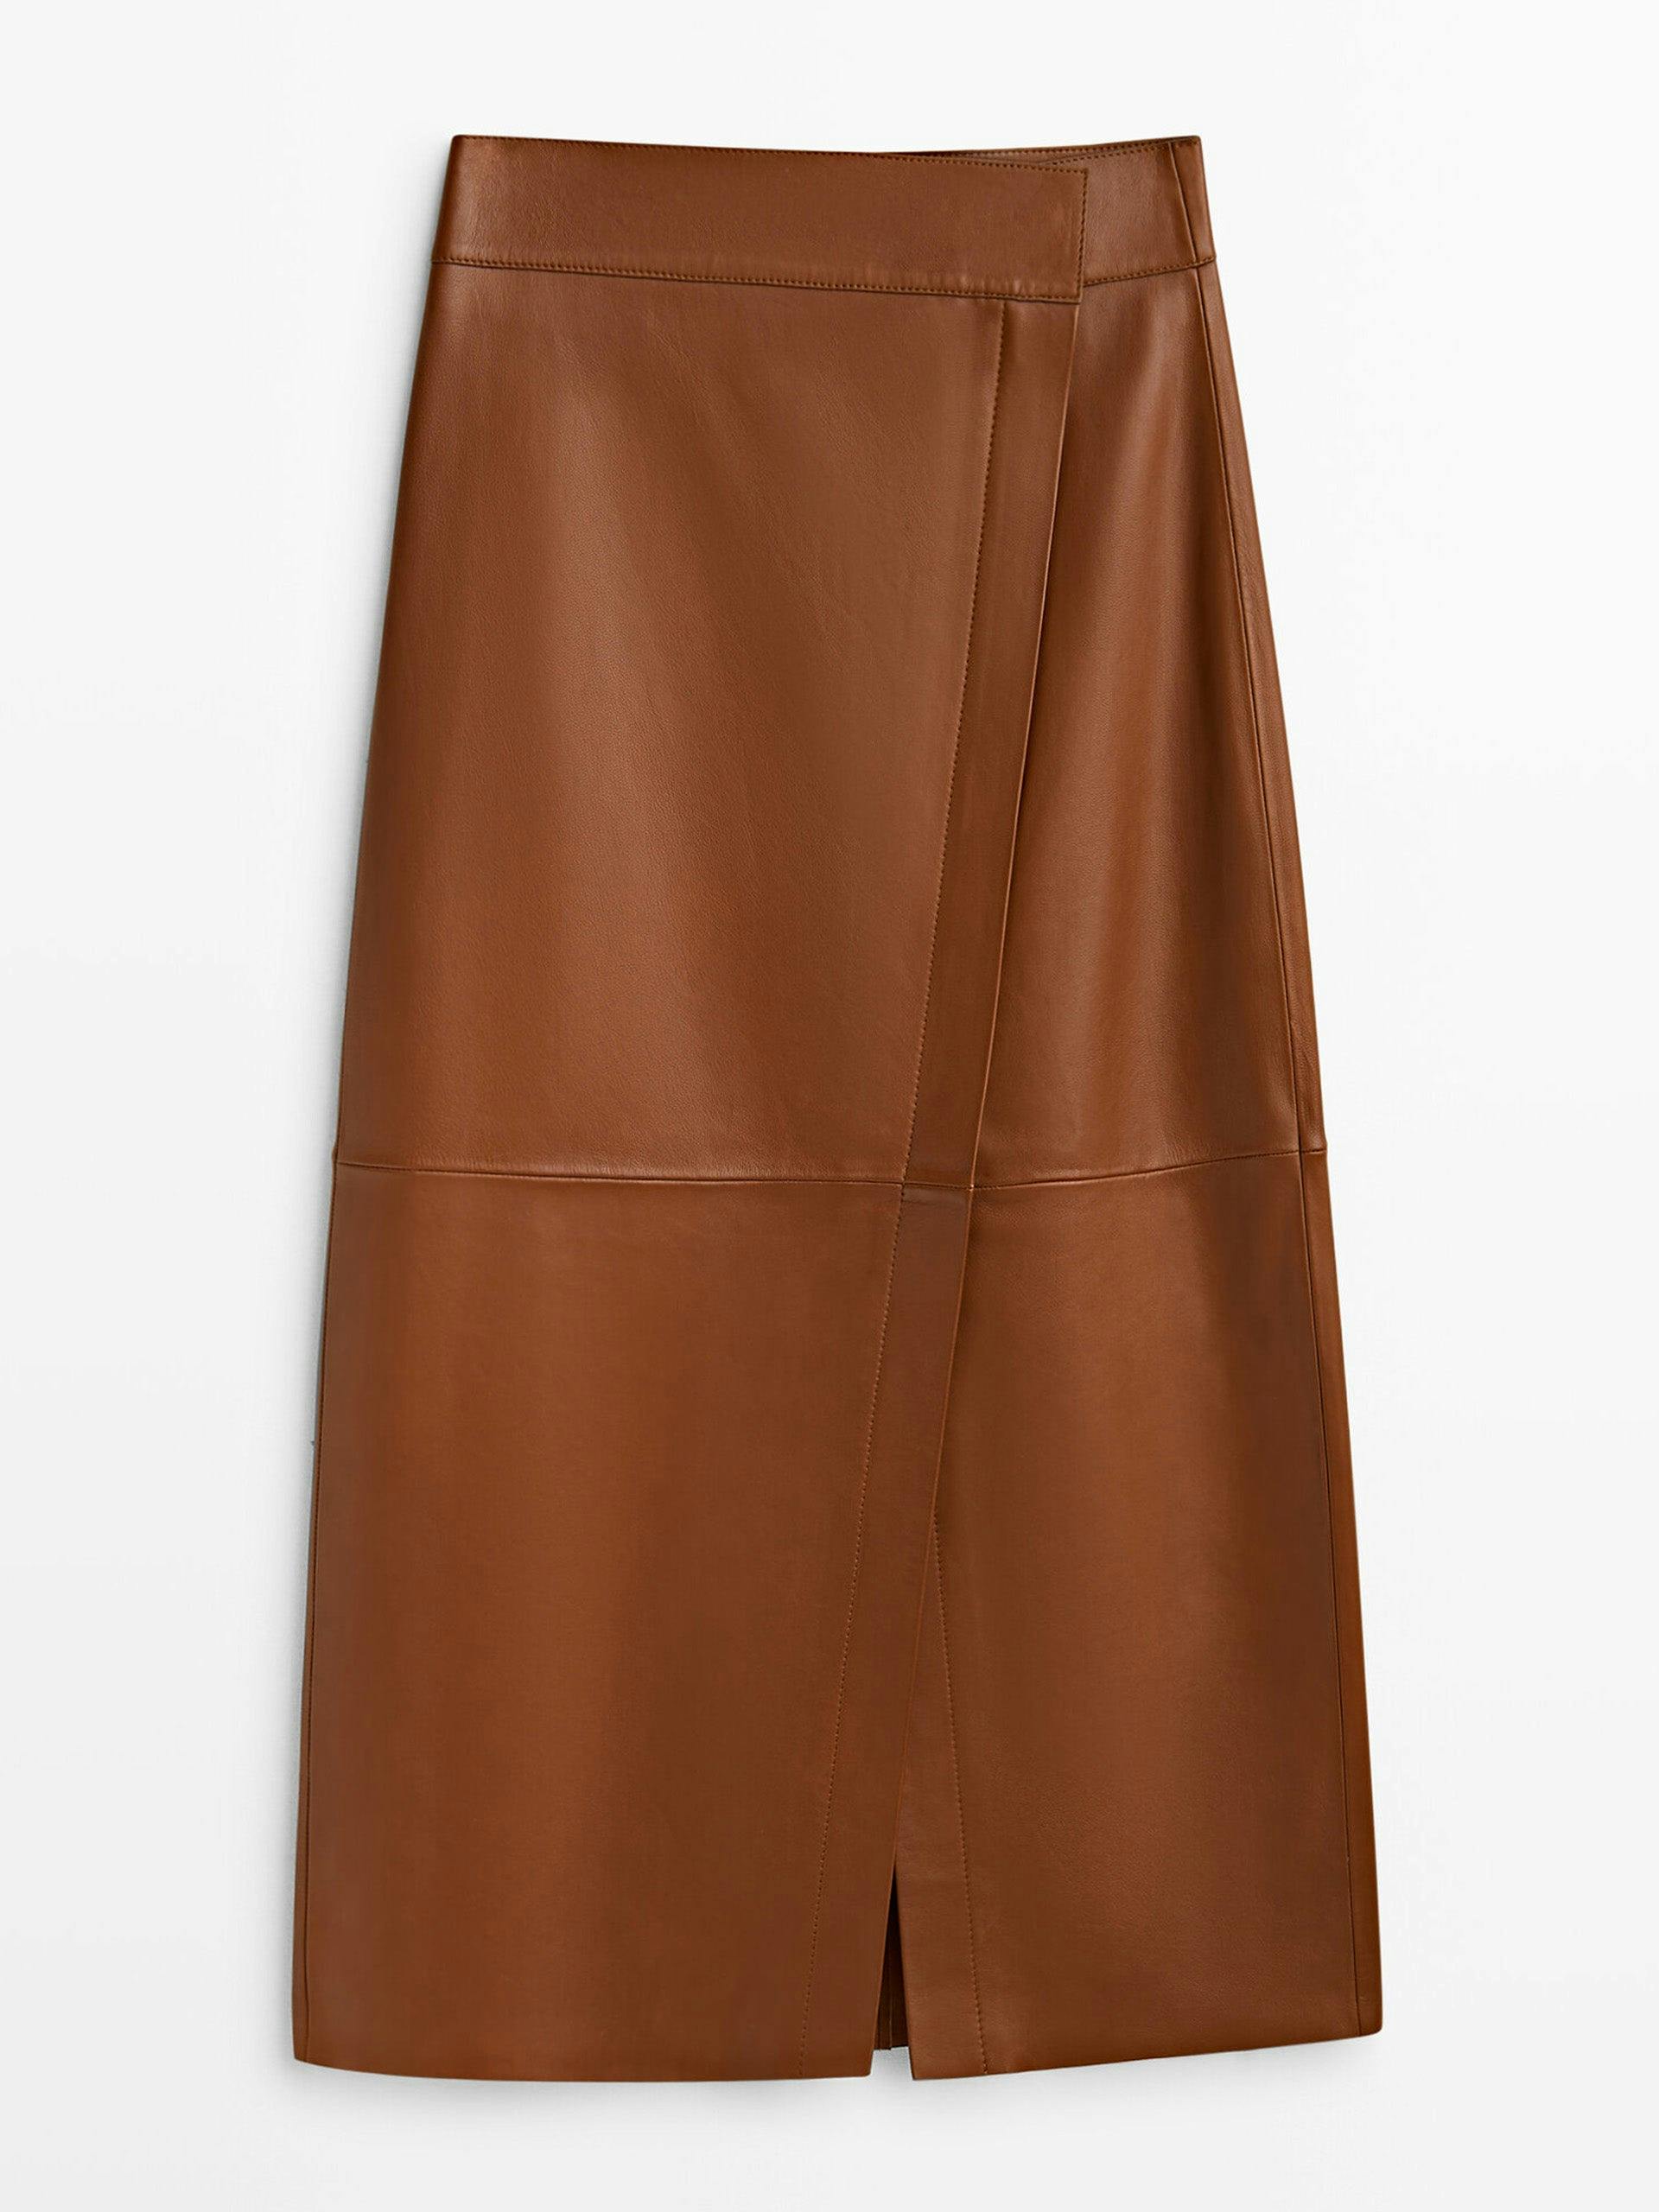 Leather midi pencil skirt